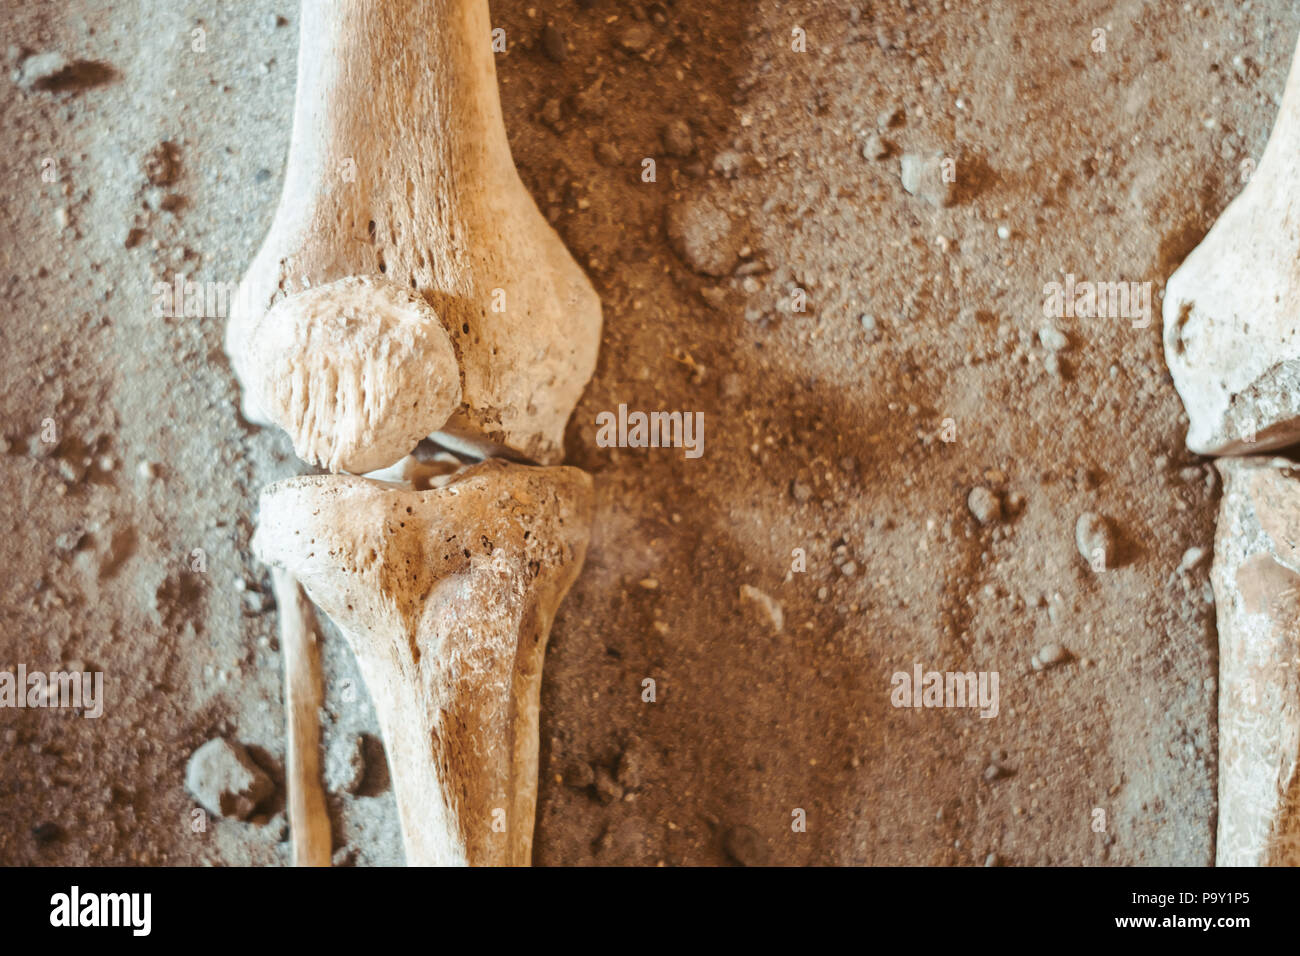 Des fouilles archéologiques et trouve des ossements d'un squelette dans une sépulture humaine , un détail de l'ancienne recherche, la préhistoire. Banque D'Images